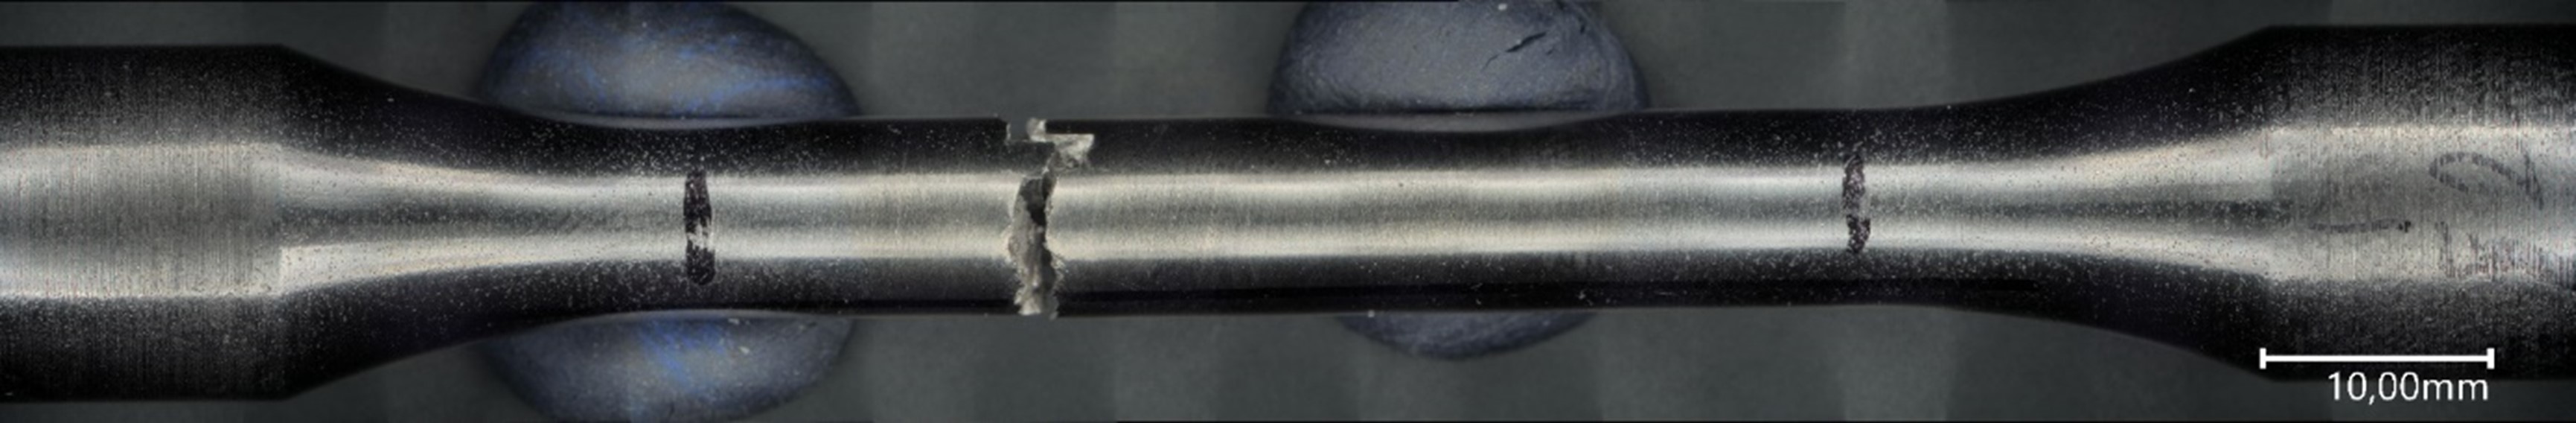 nodularWeld – Reparaturschweißung von Gusseisen mit Kugelgrafit